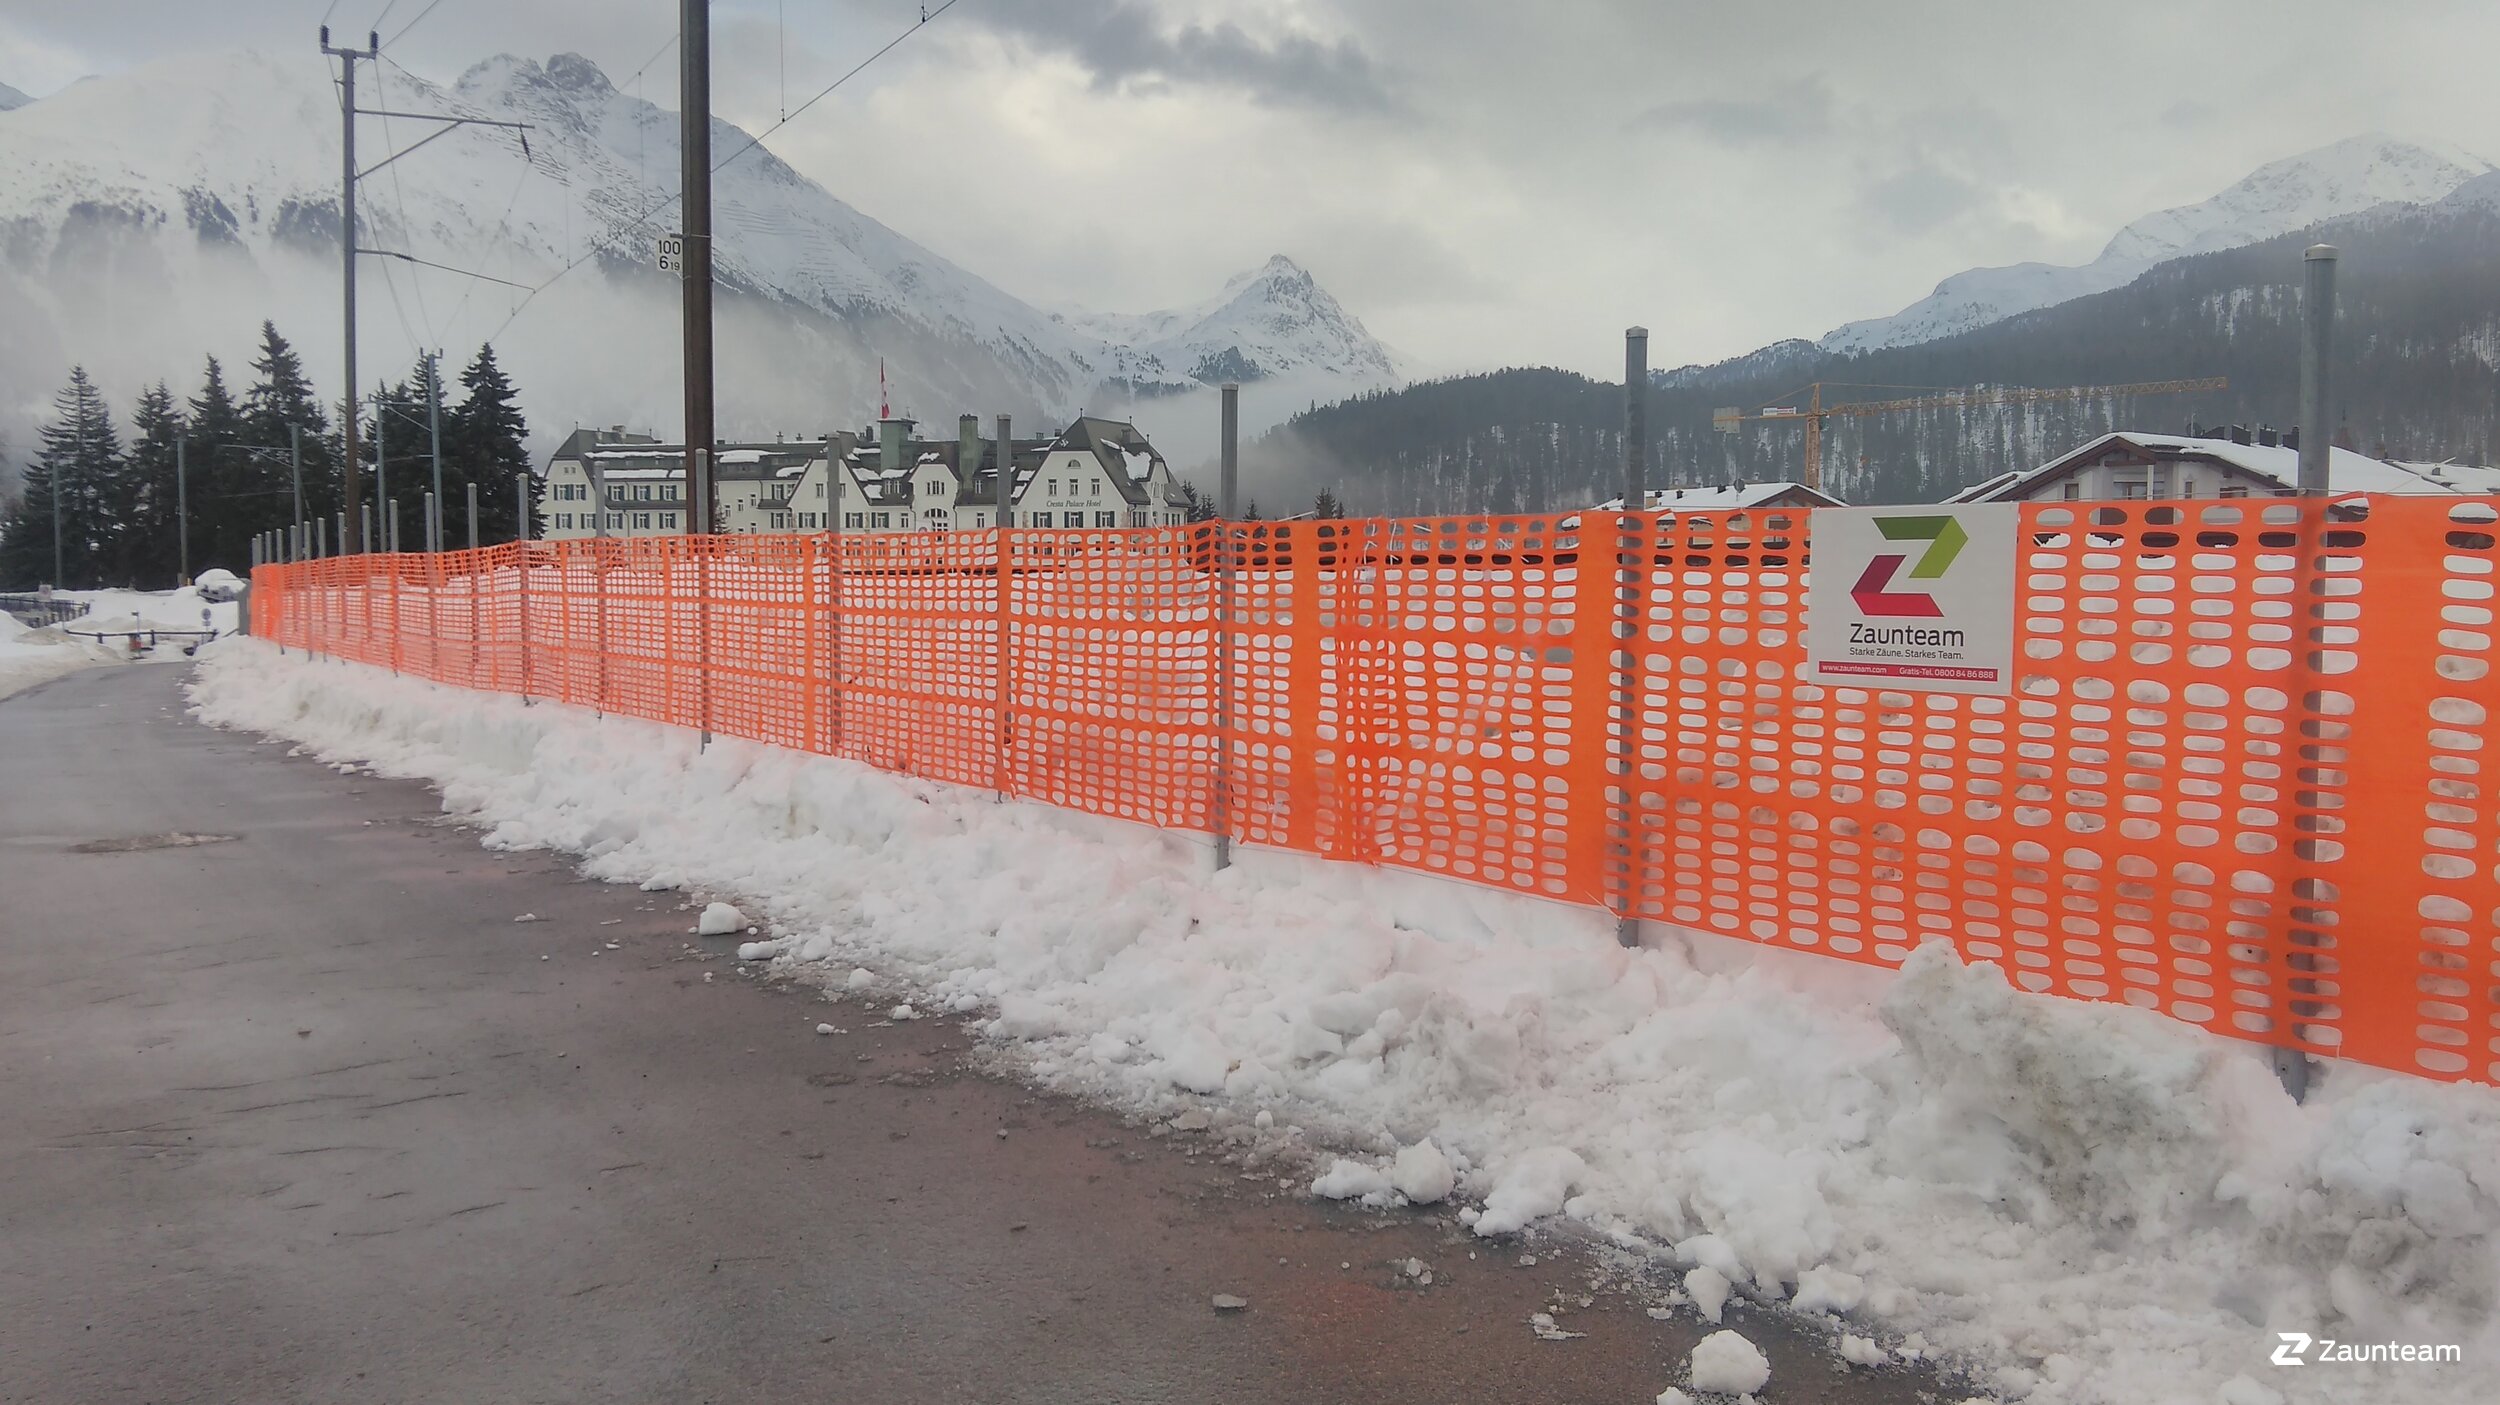 Clôture de sécurité de 2019 à 7505 Celerina Suisse de Zaunteam Engadin.